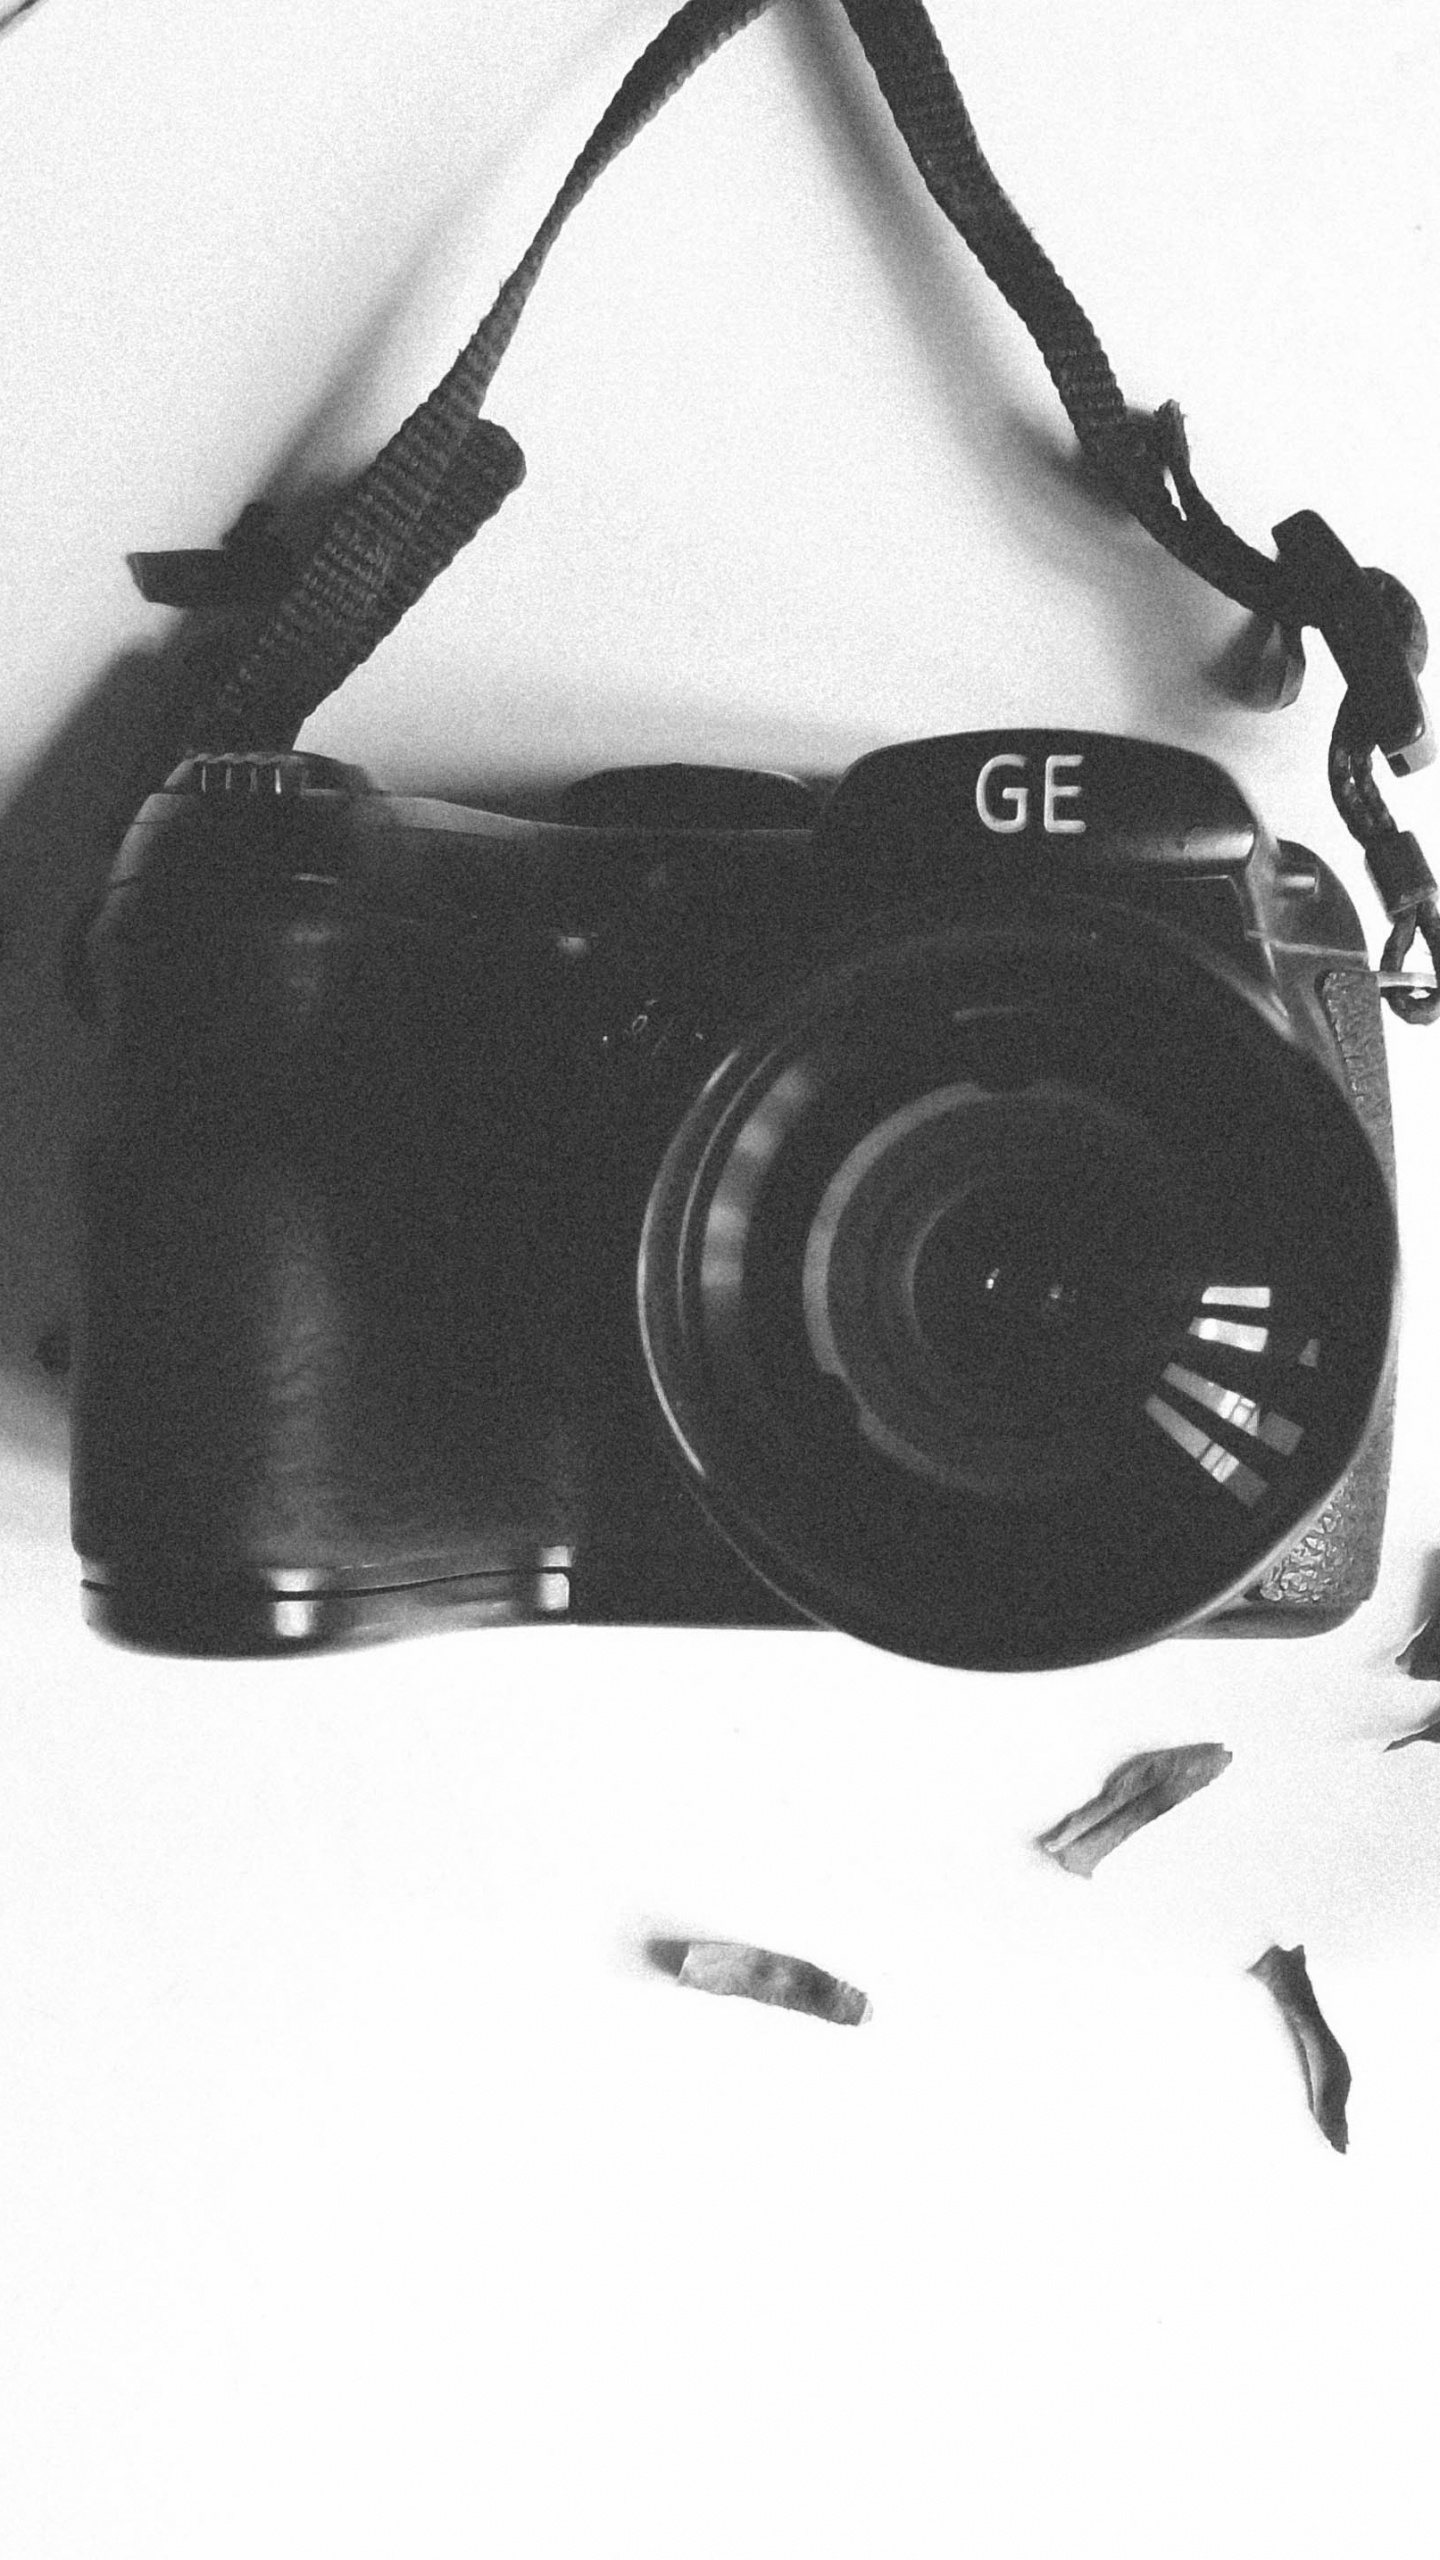 Schwarze Nikon Dslr Kamera Auf Weißem Textil. Wallpaper in 1440x2560 Resolution